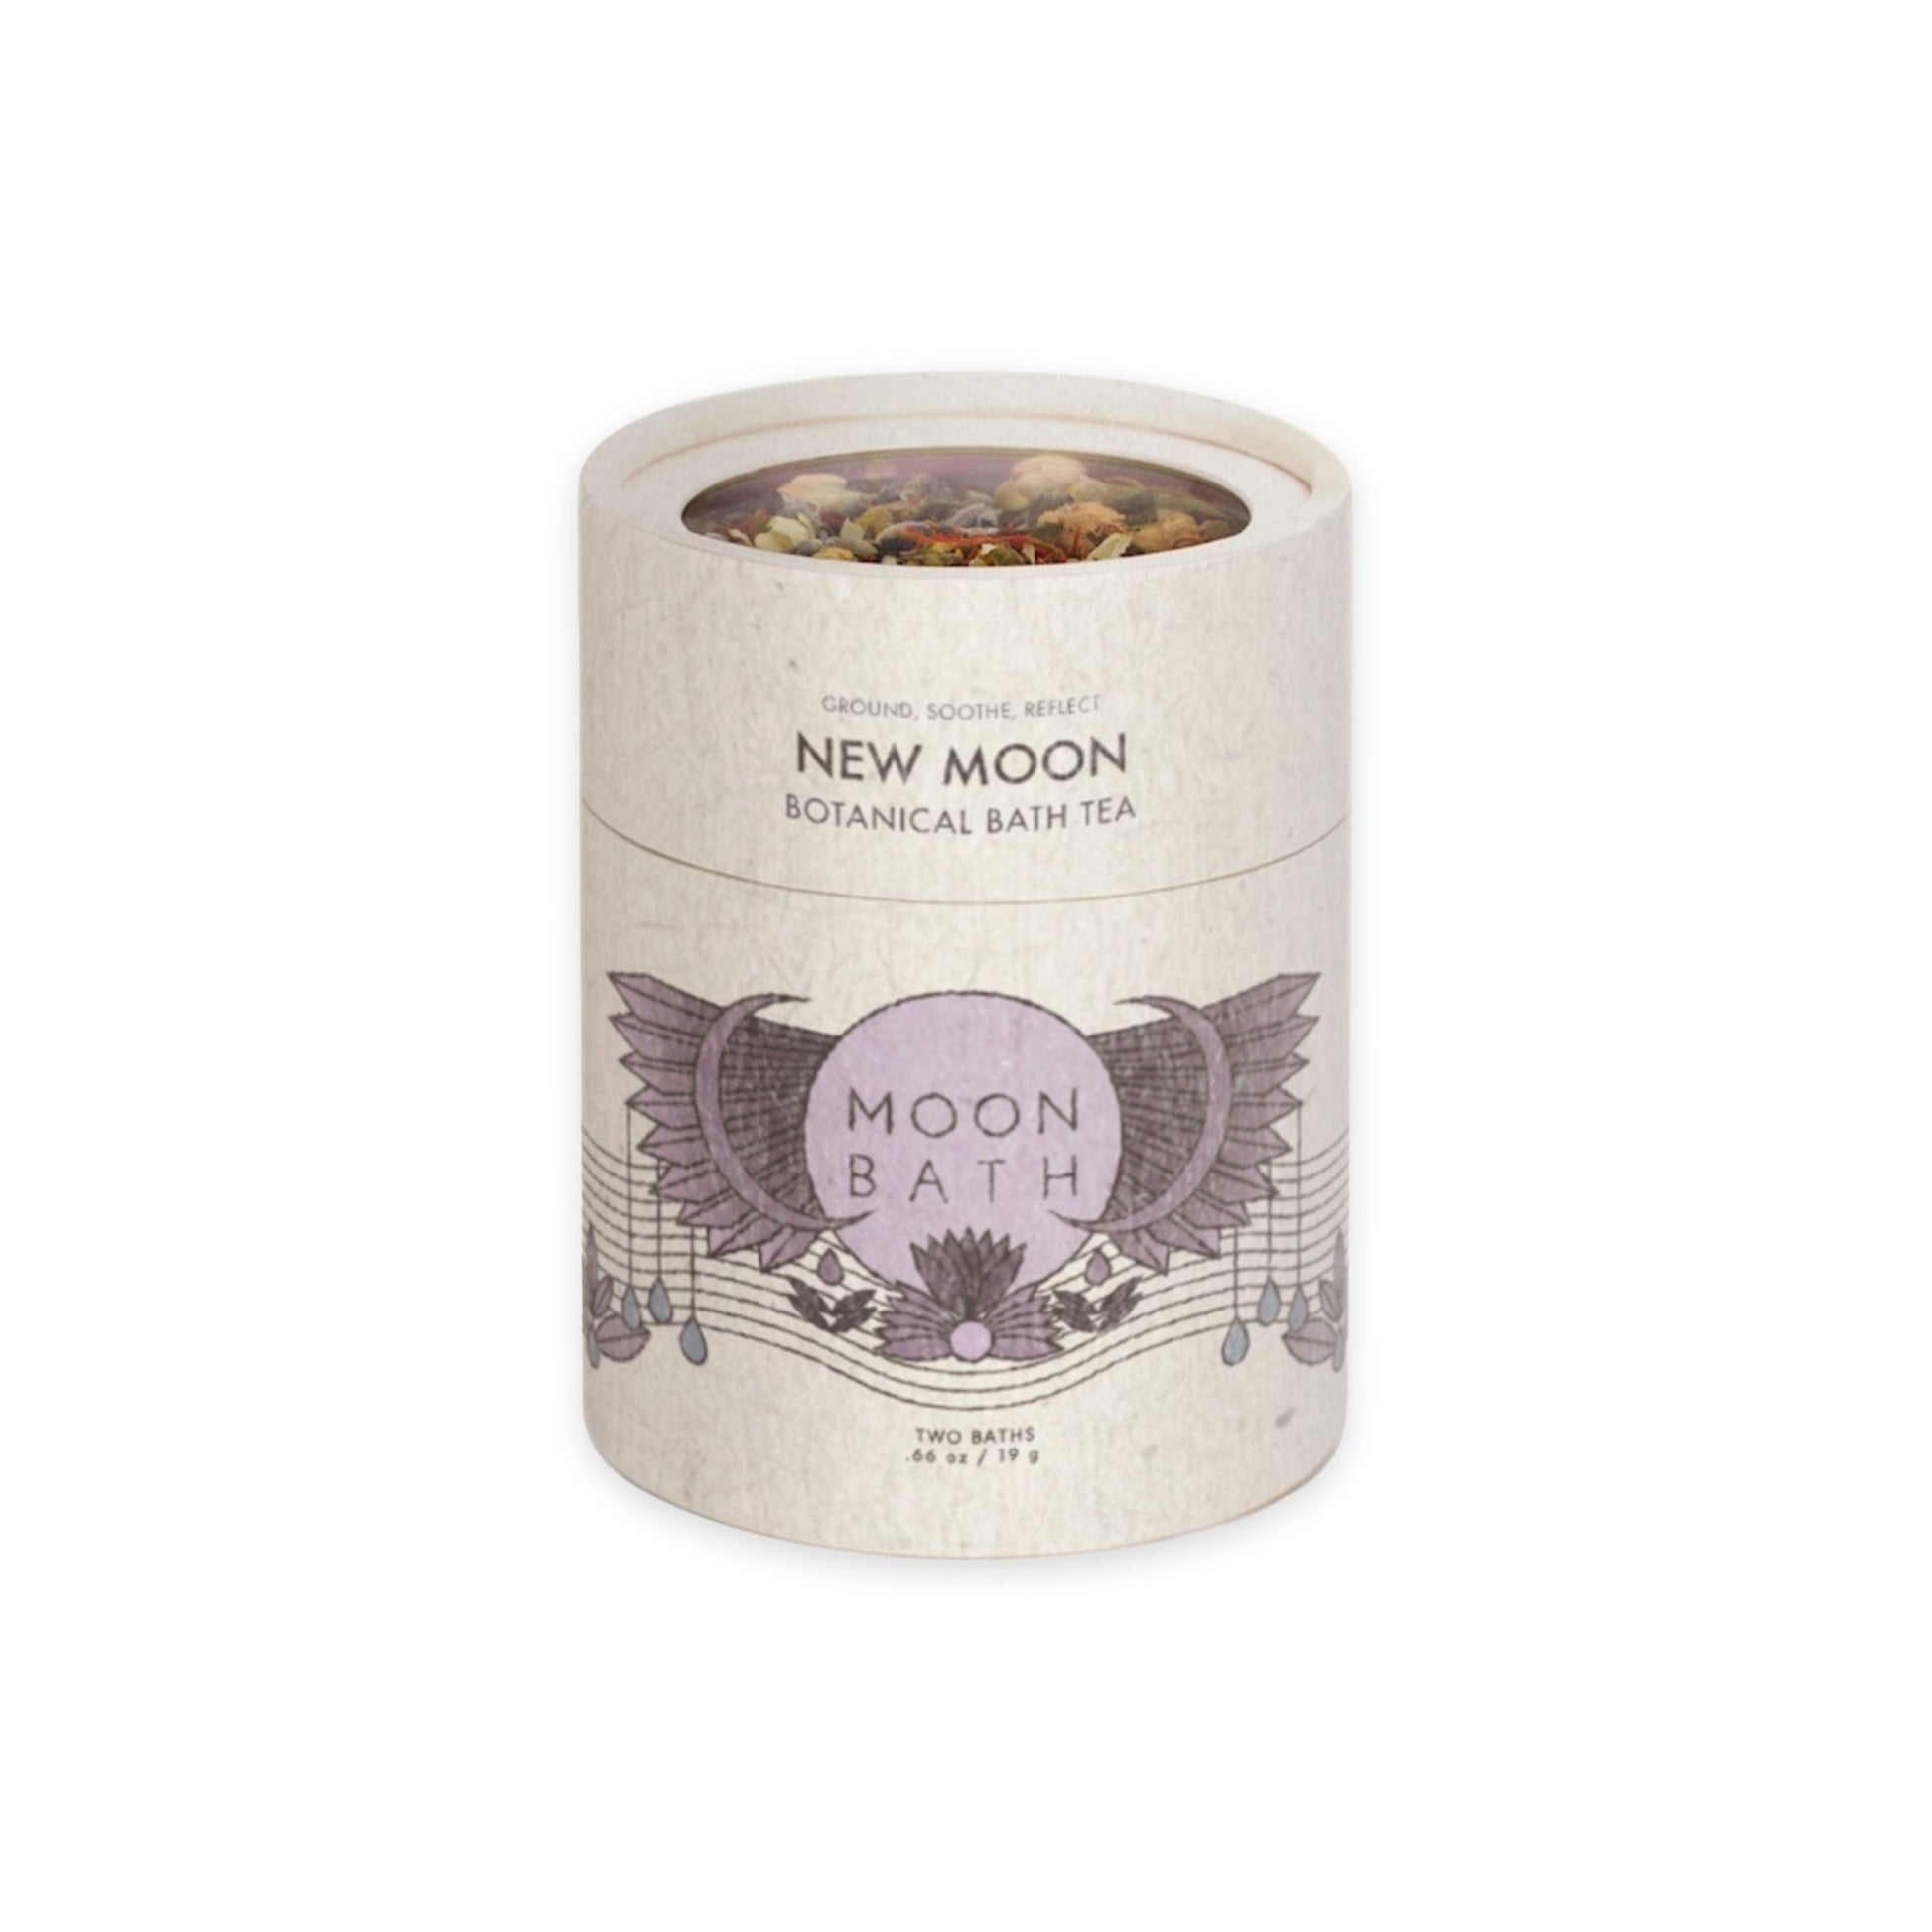 NEW MOON - Botanical Bath Tea | Moon Bath - Muse + Moonstone